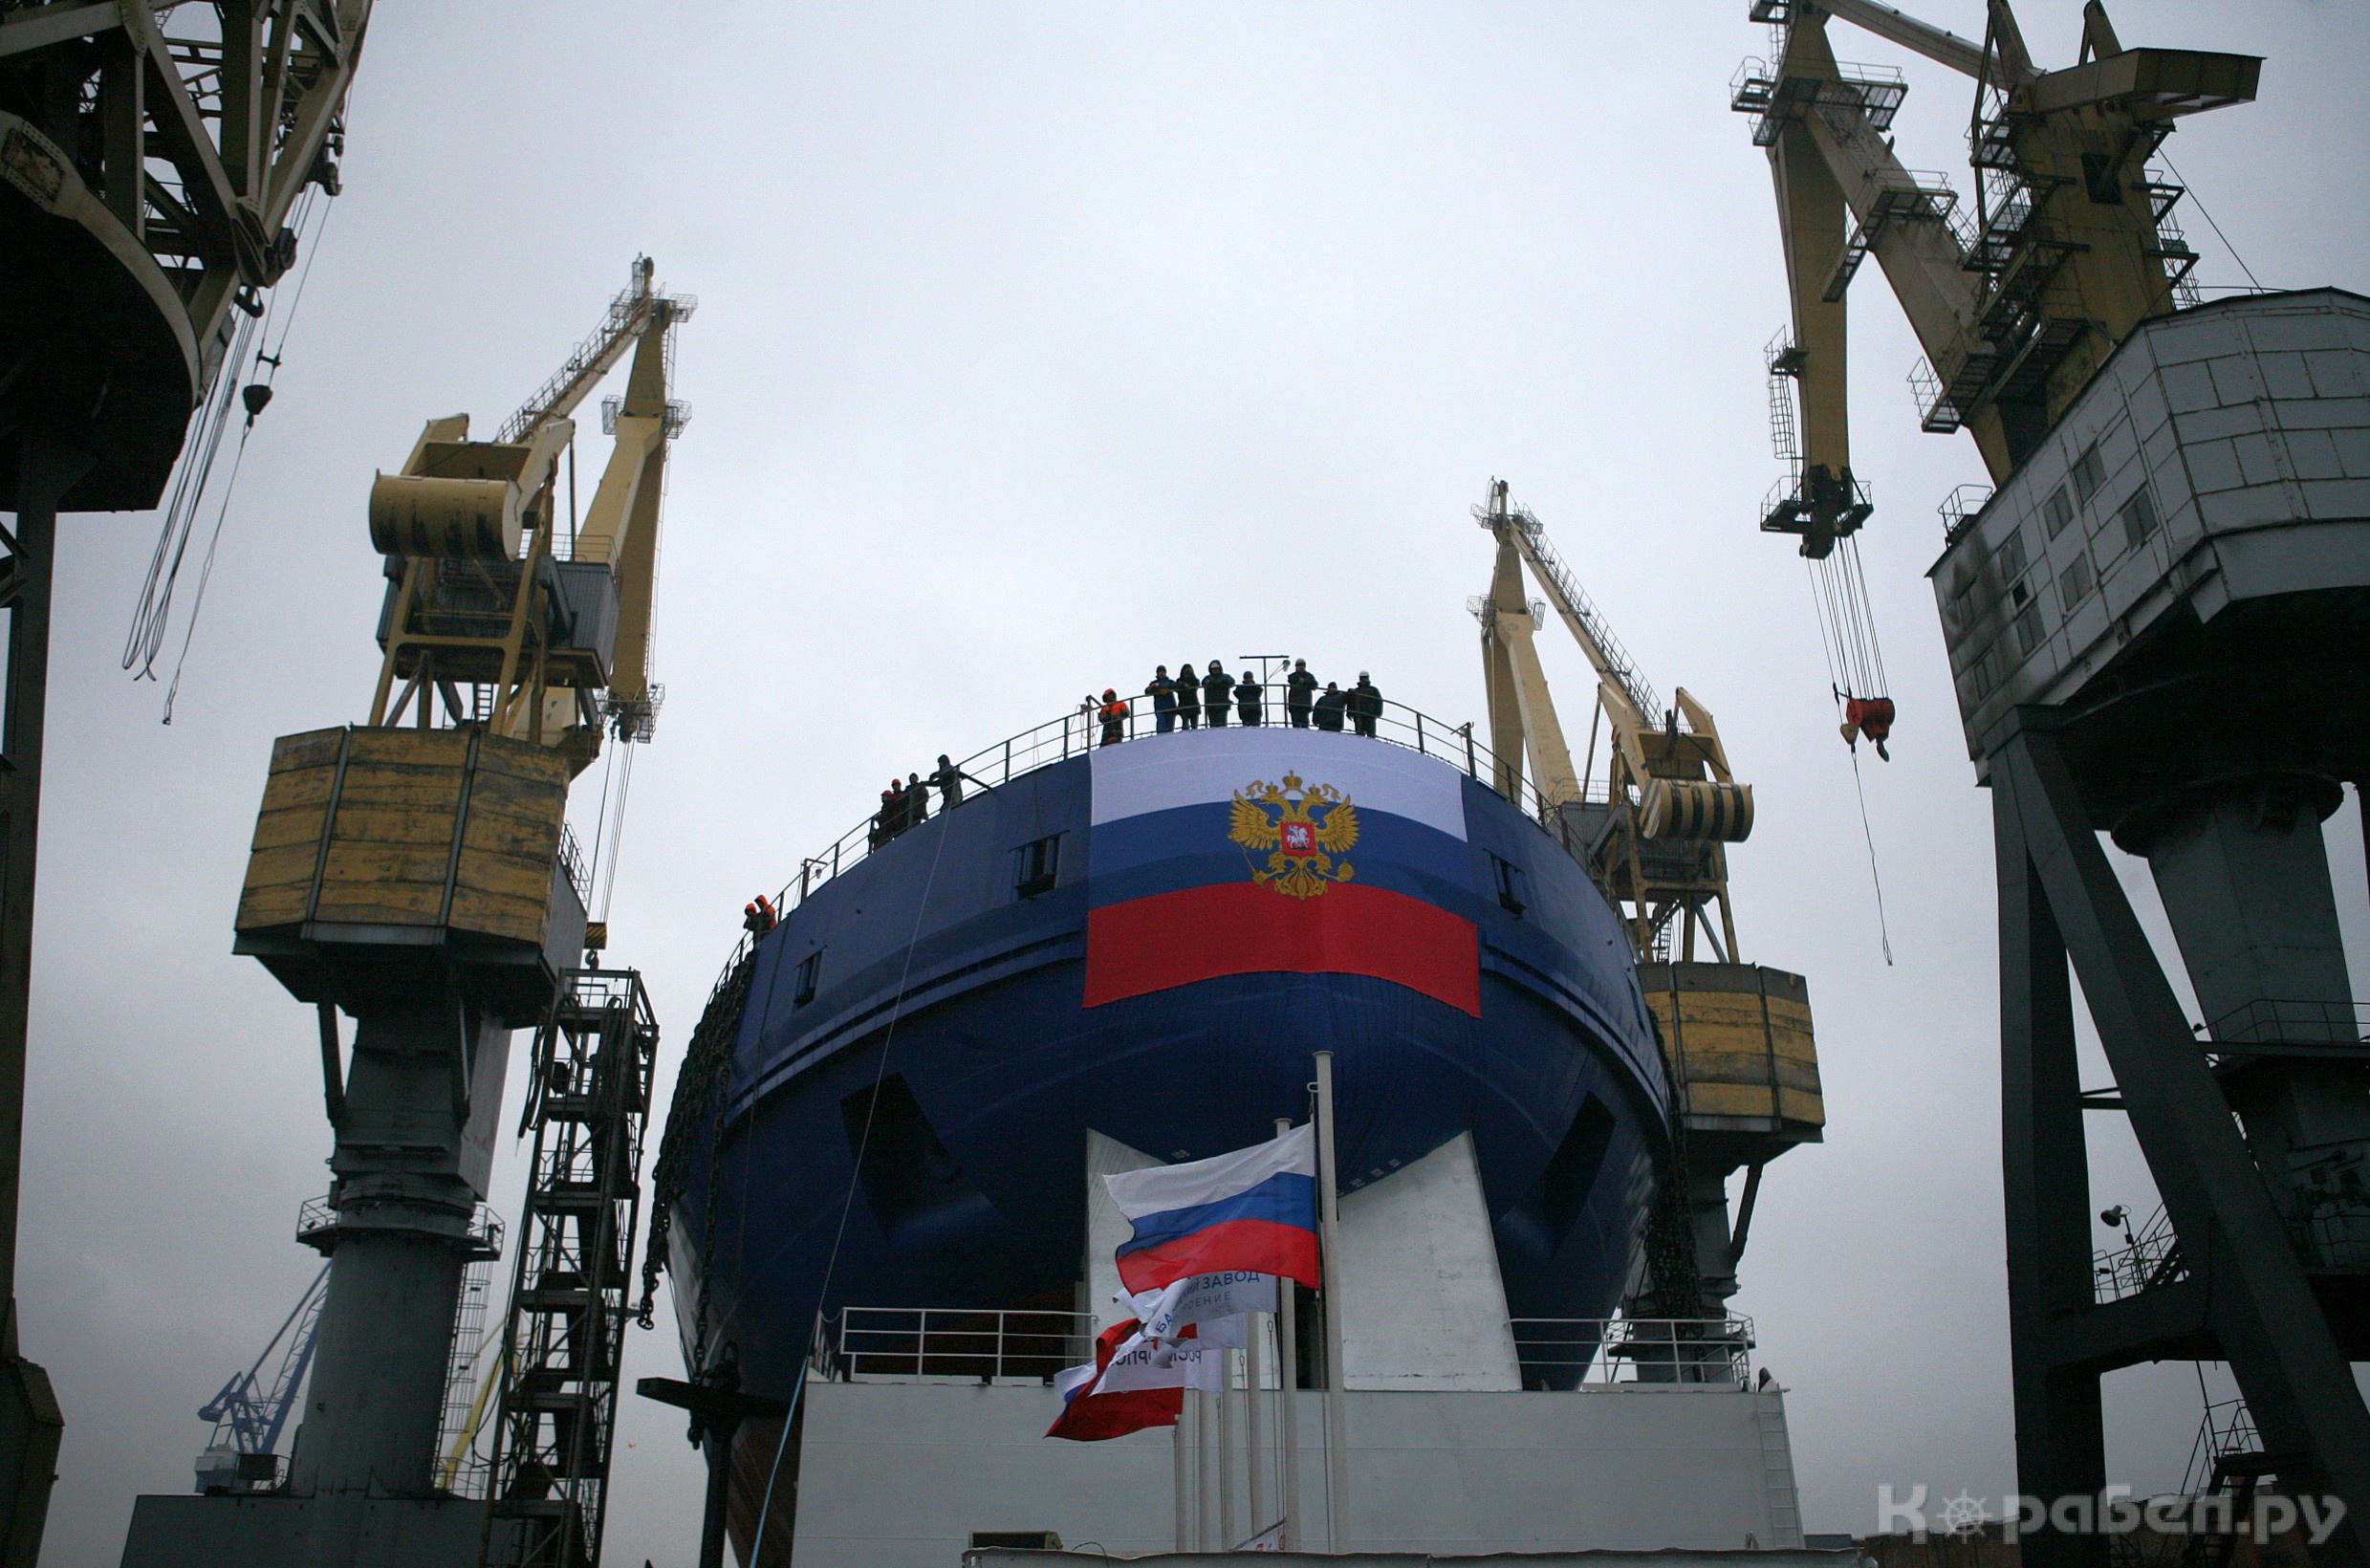 2016年底,俄罗斯22600型破冰船首舰"切尔诺梅尔金"号在波罗的海造船厂